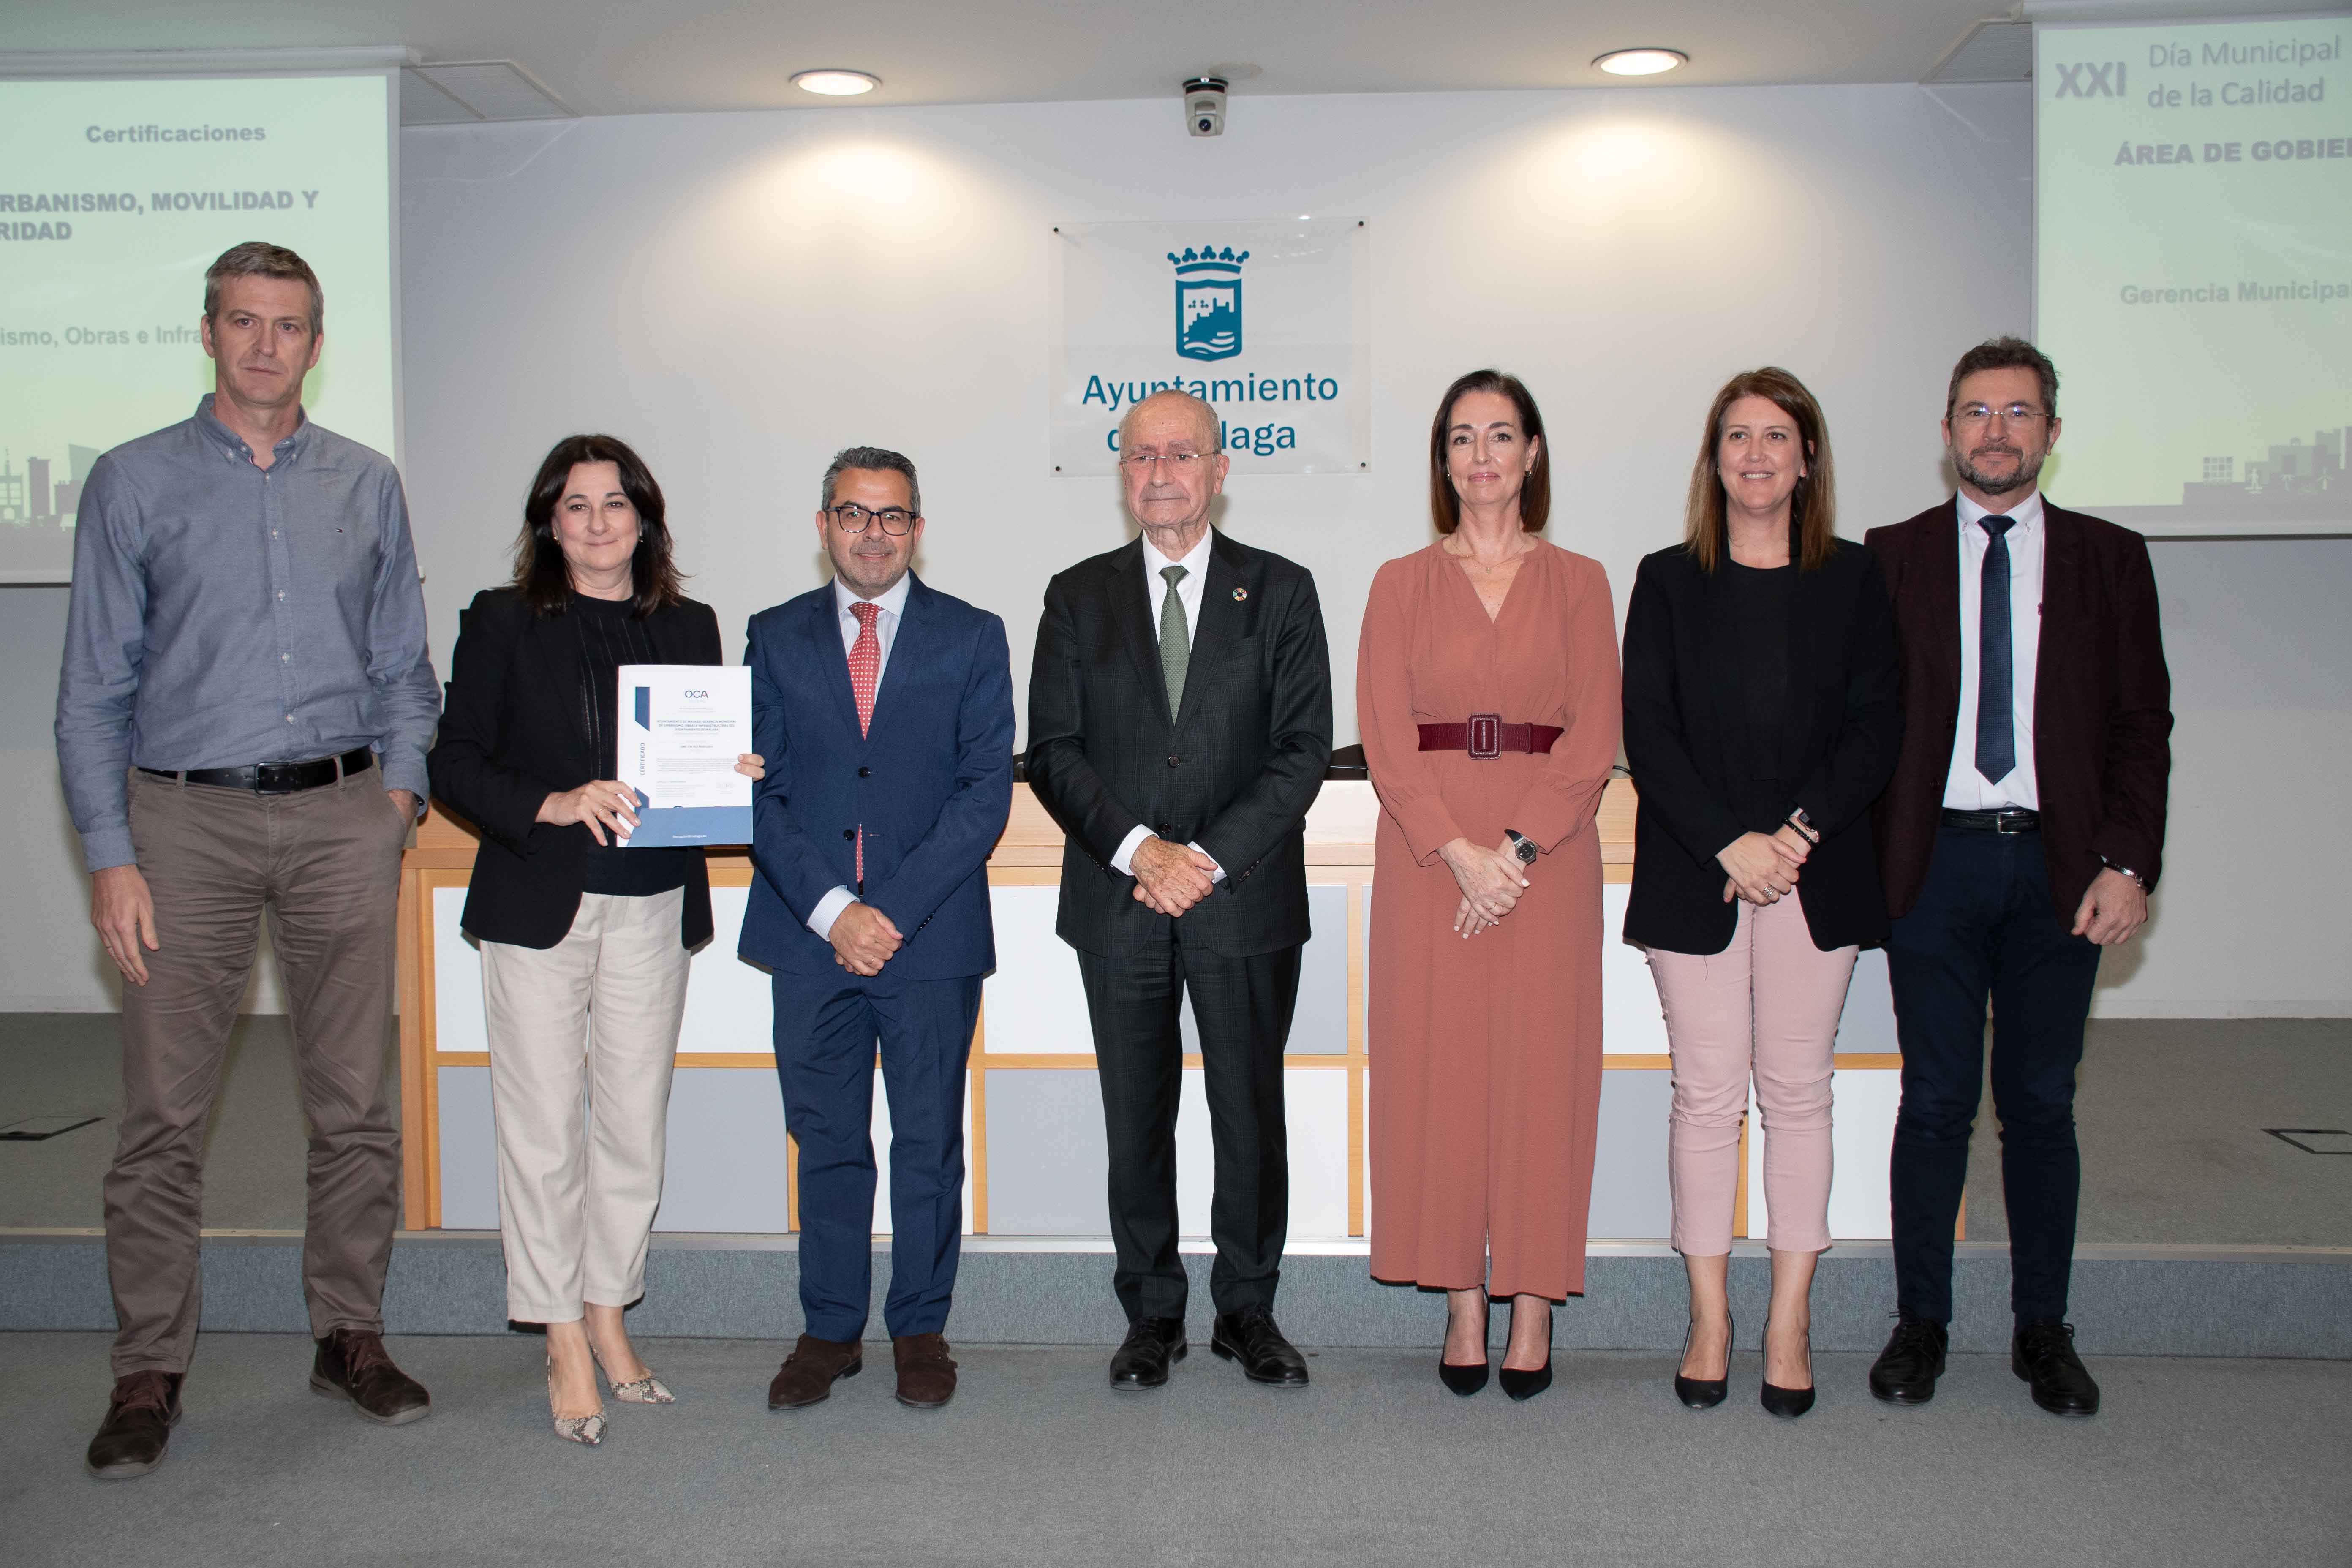 OCA Global realiza la entrega de certificados al Ayuntamiento de Málaga